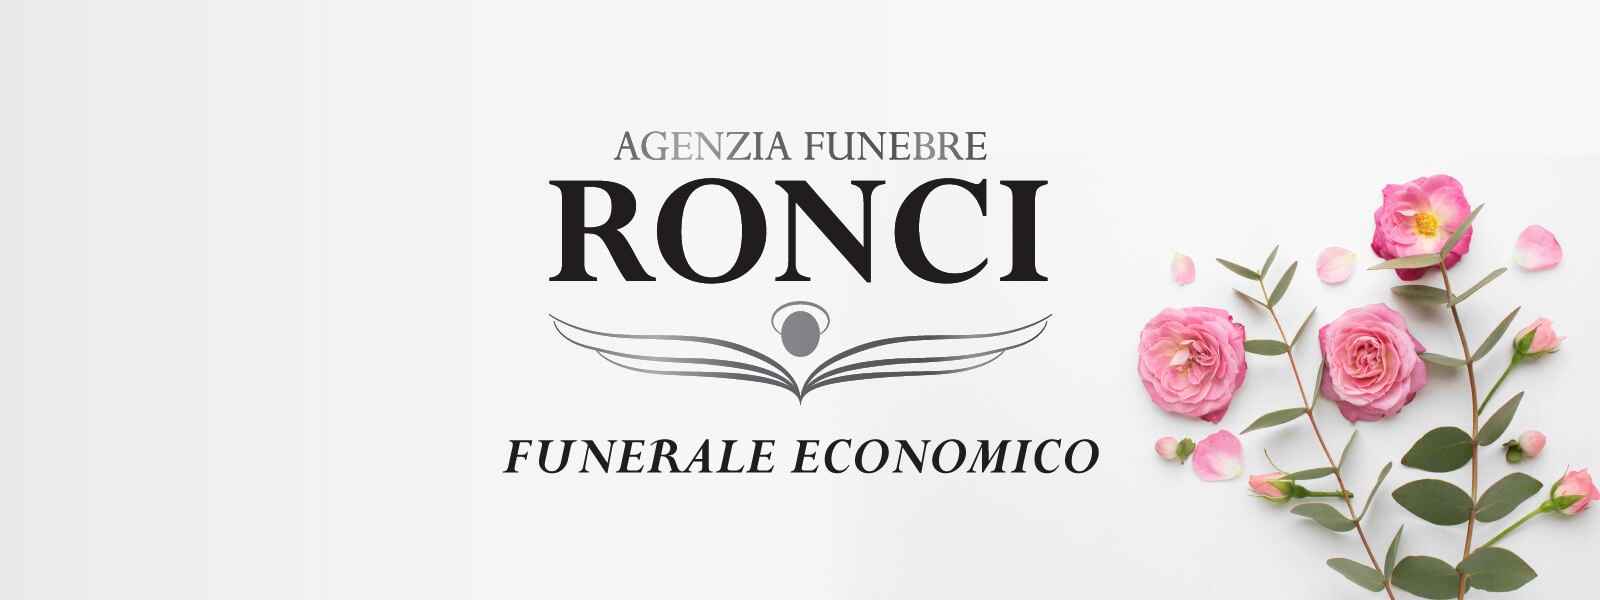 https://www.agenziafunebreronci.it/immagini_pagine/256/funerale-economico-256-600.jpg